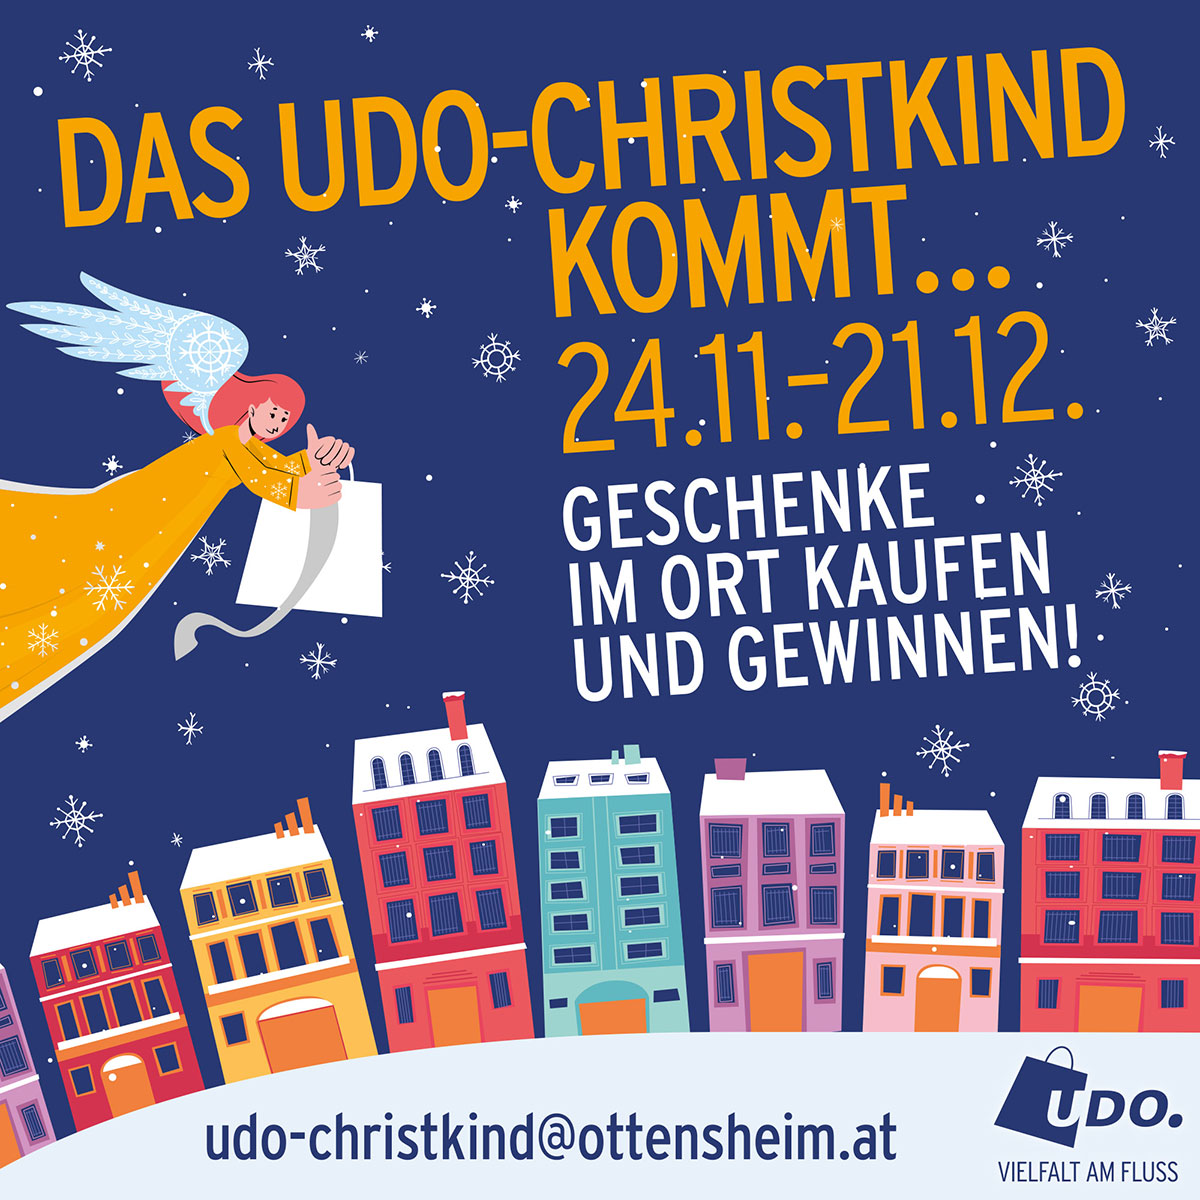 UDO - Unternehmen Donaumarkt Ottensheim